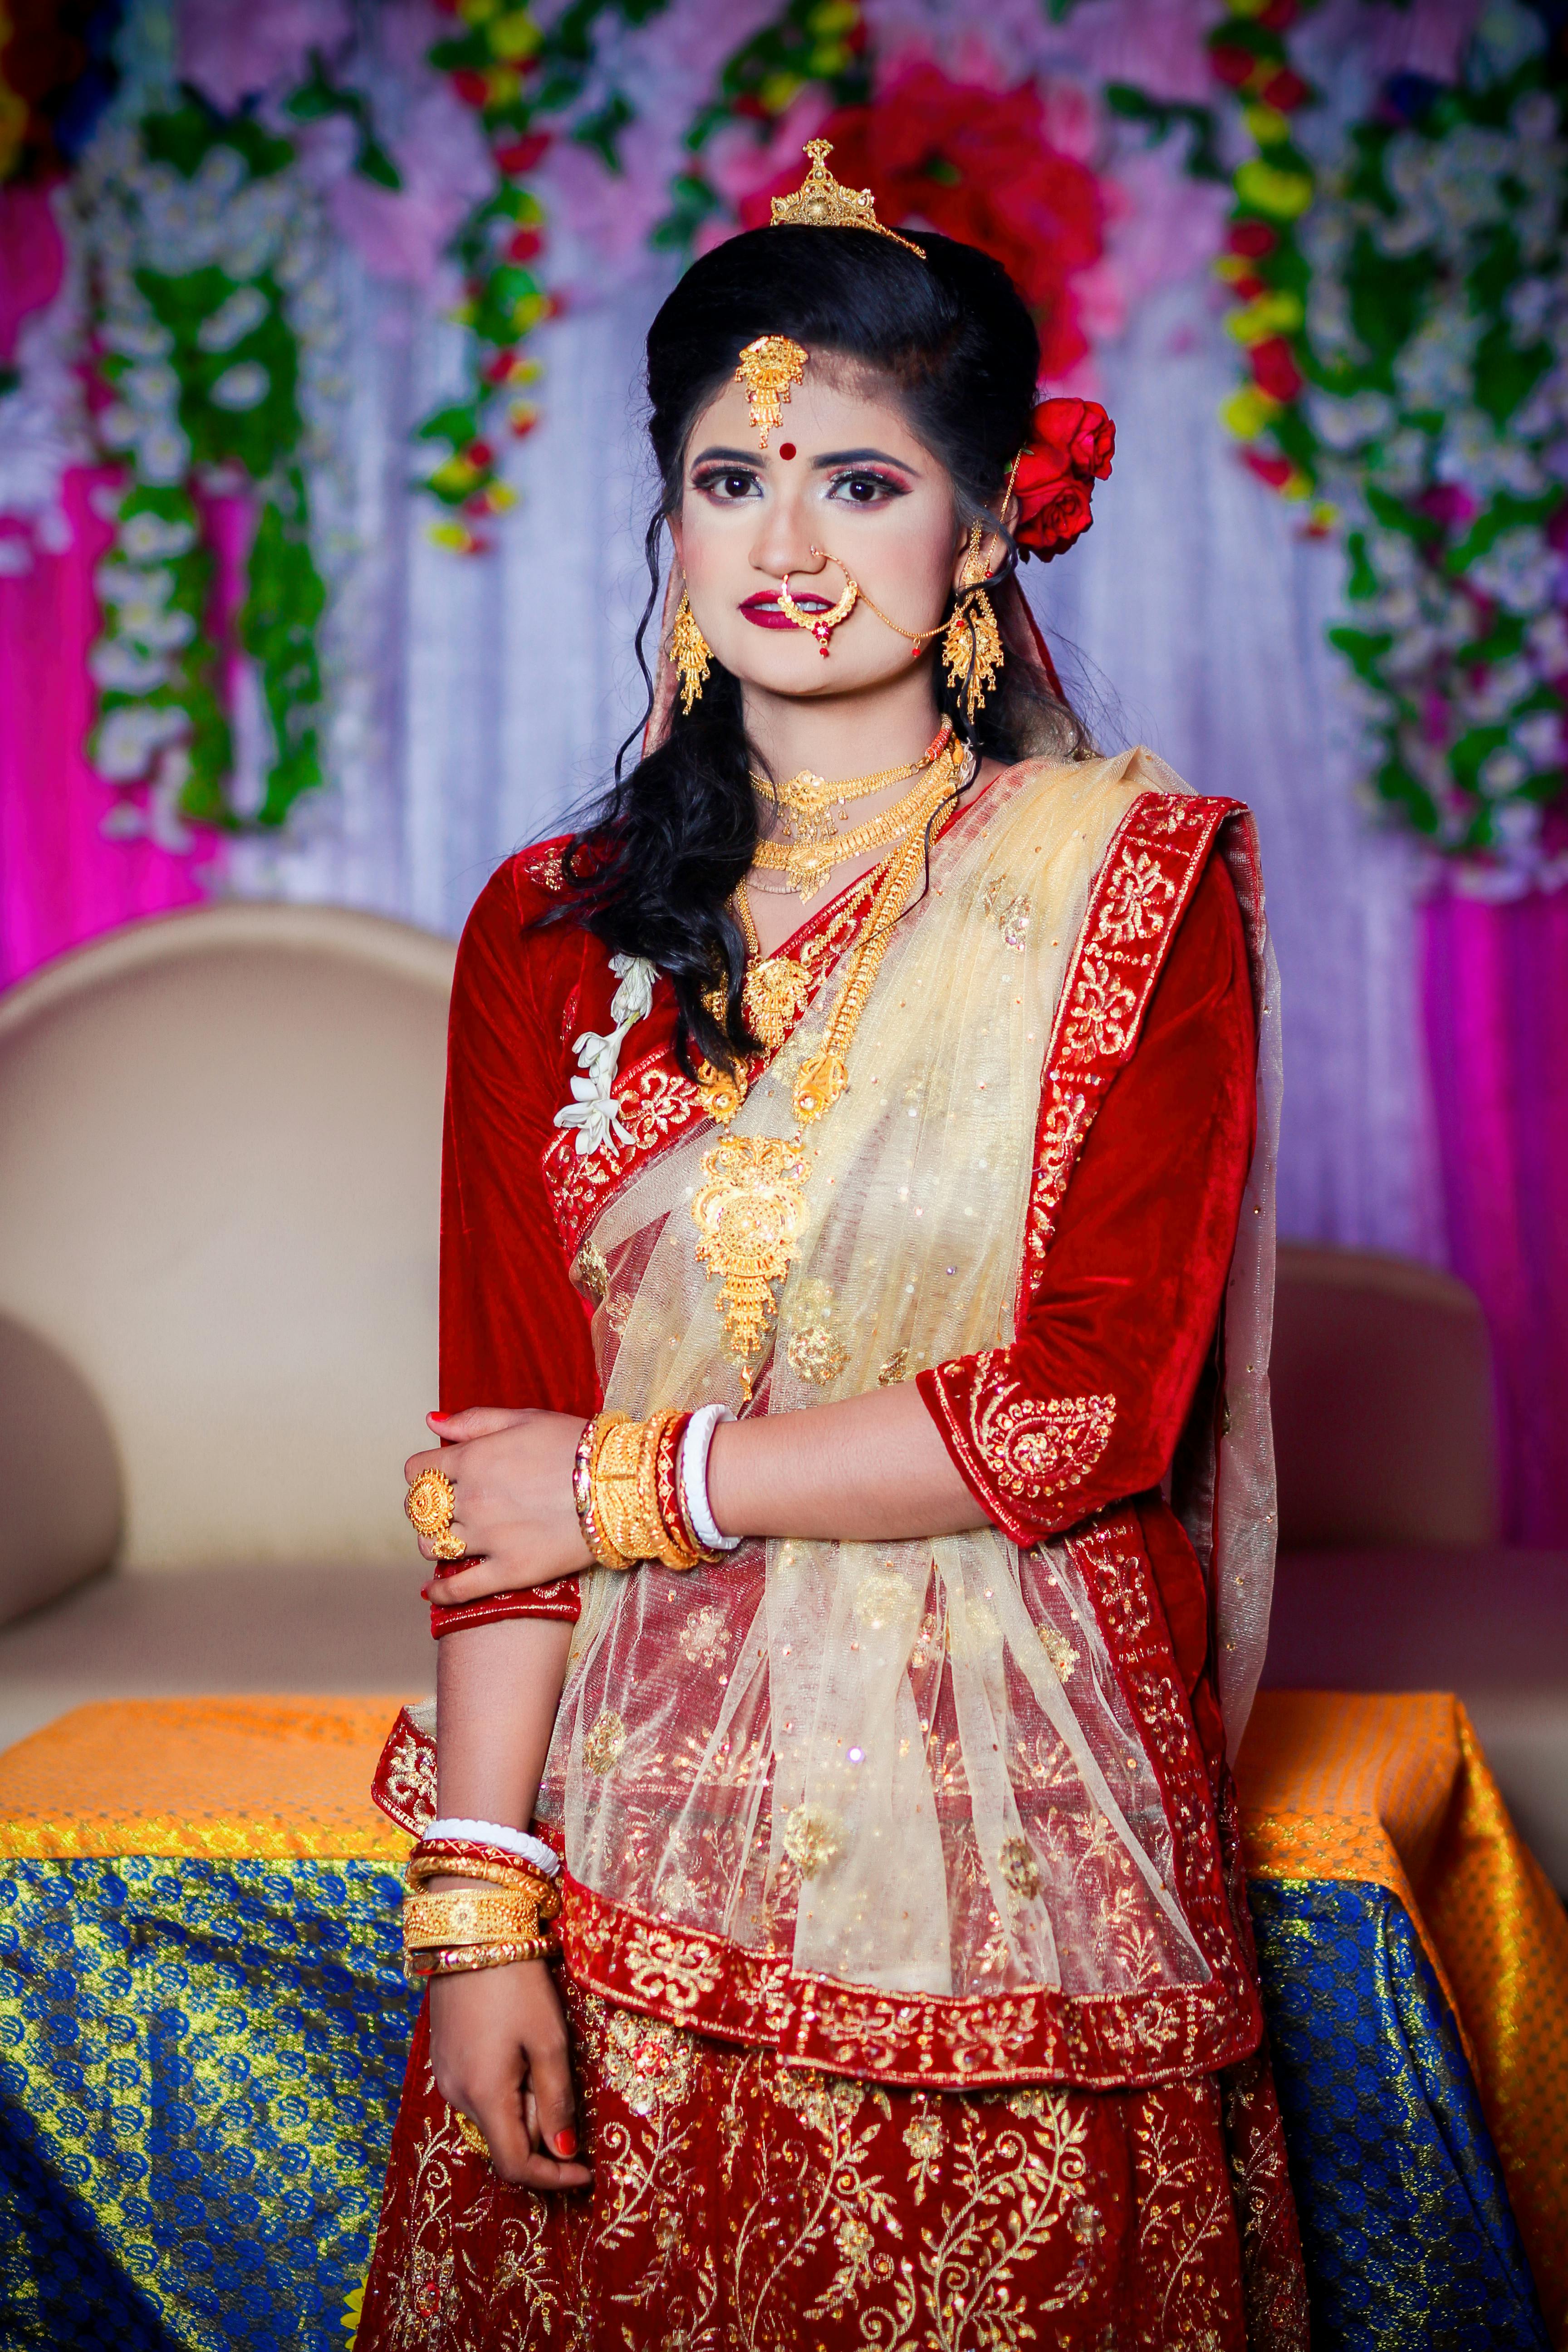 Indian Wedding Dress: Designer Dresses for Brides and Guests